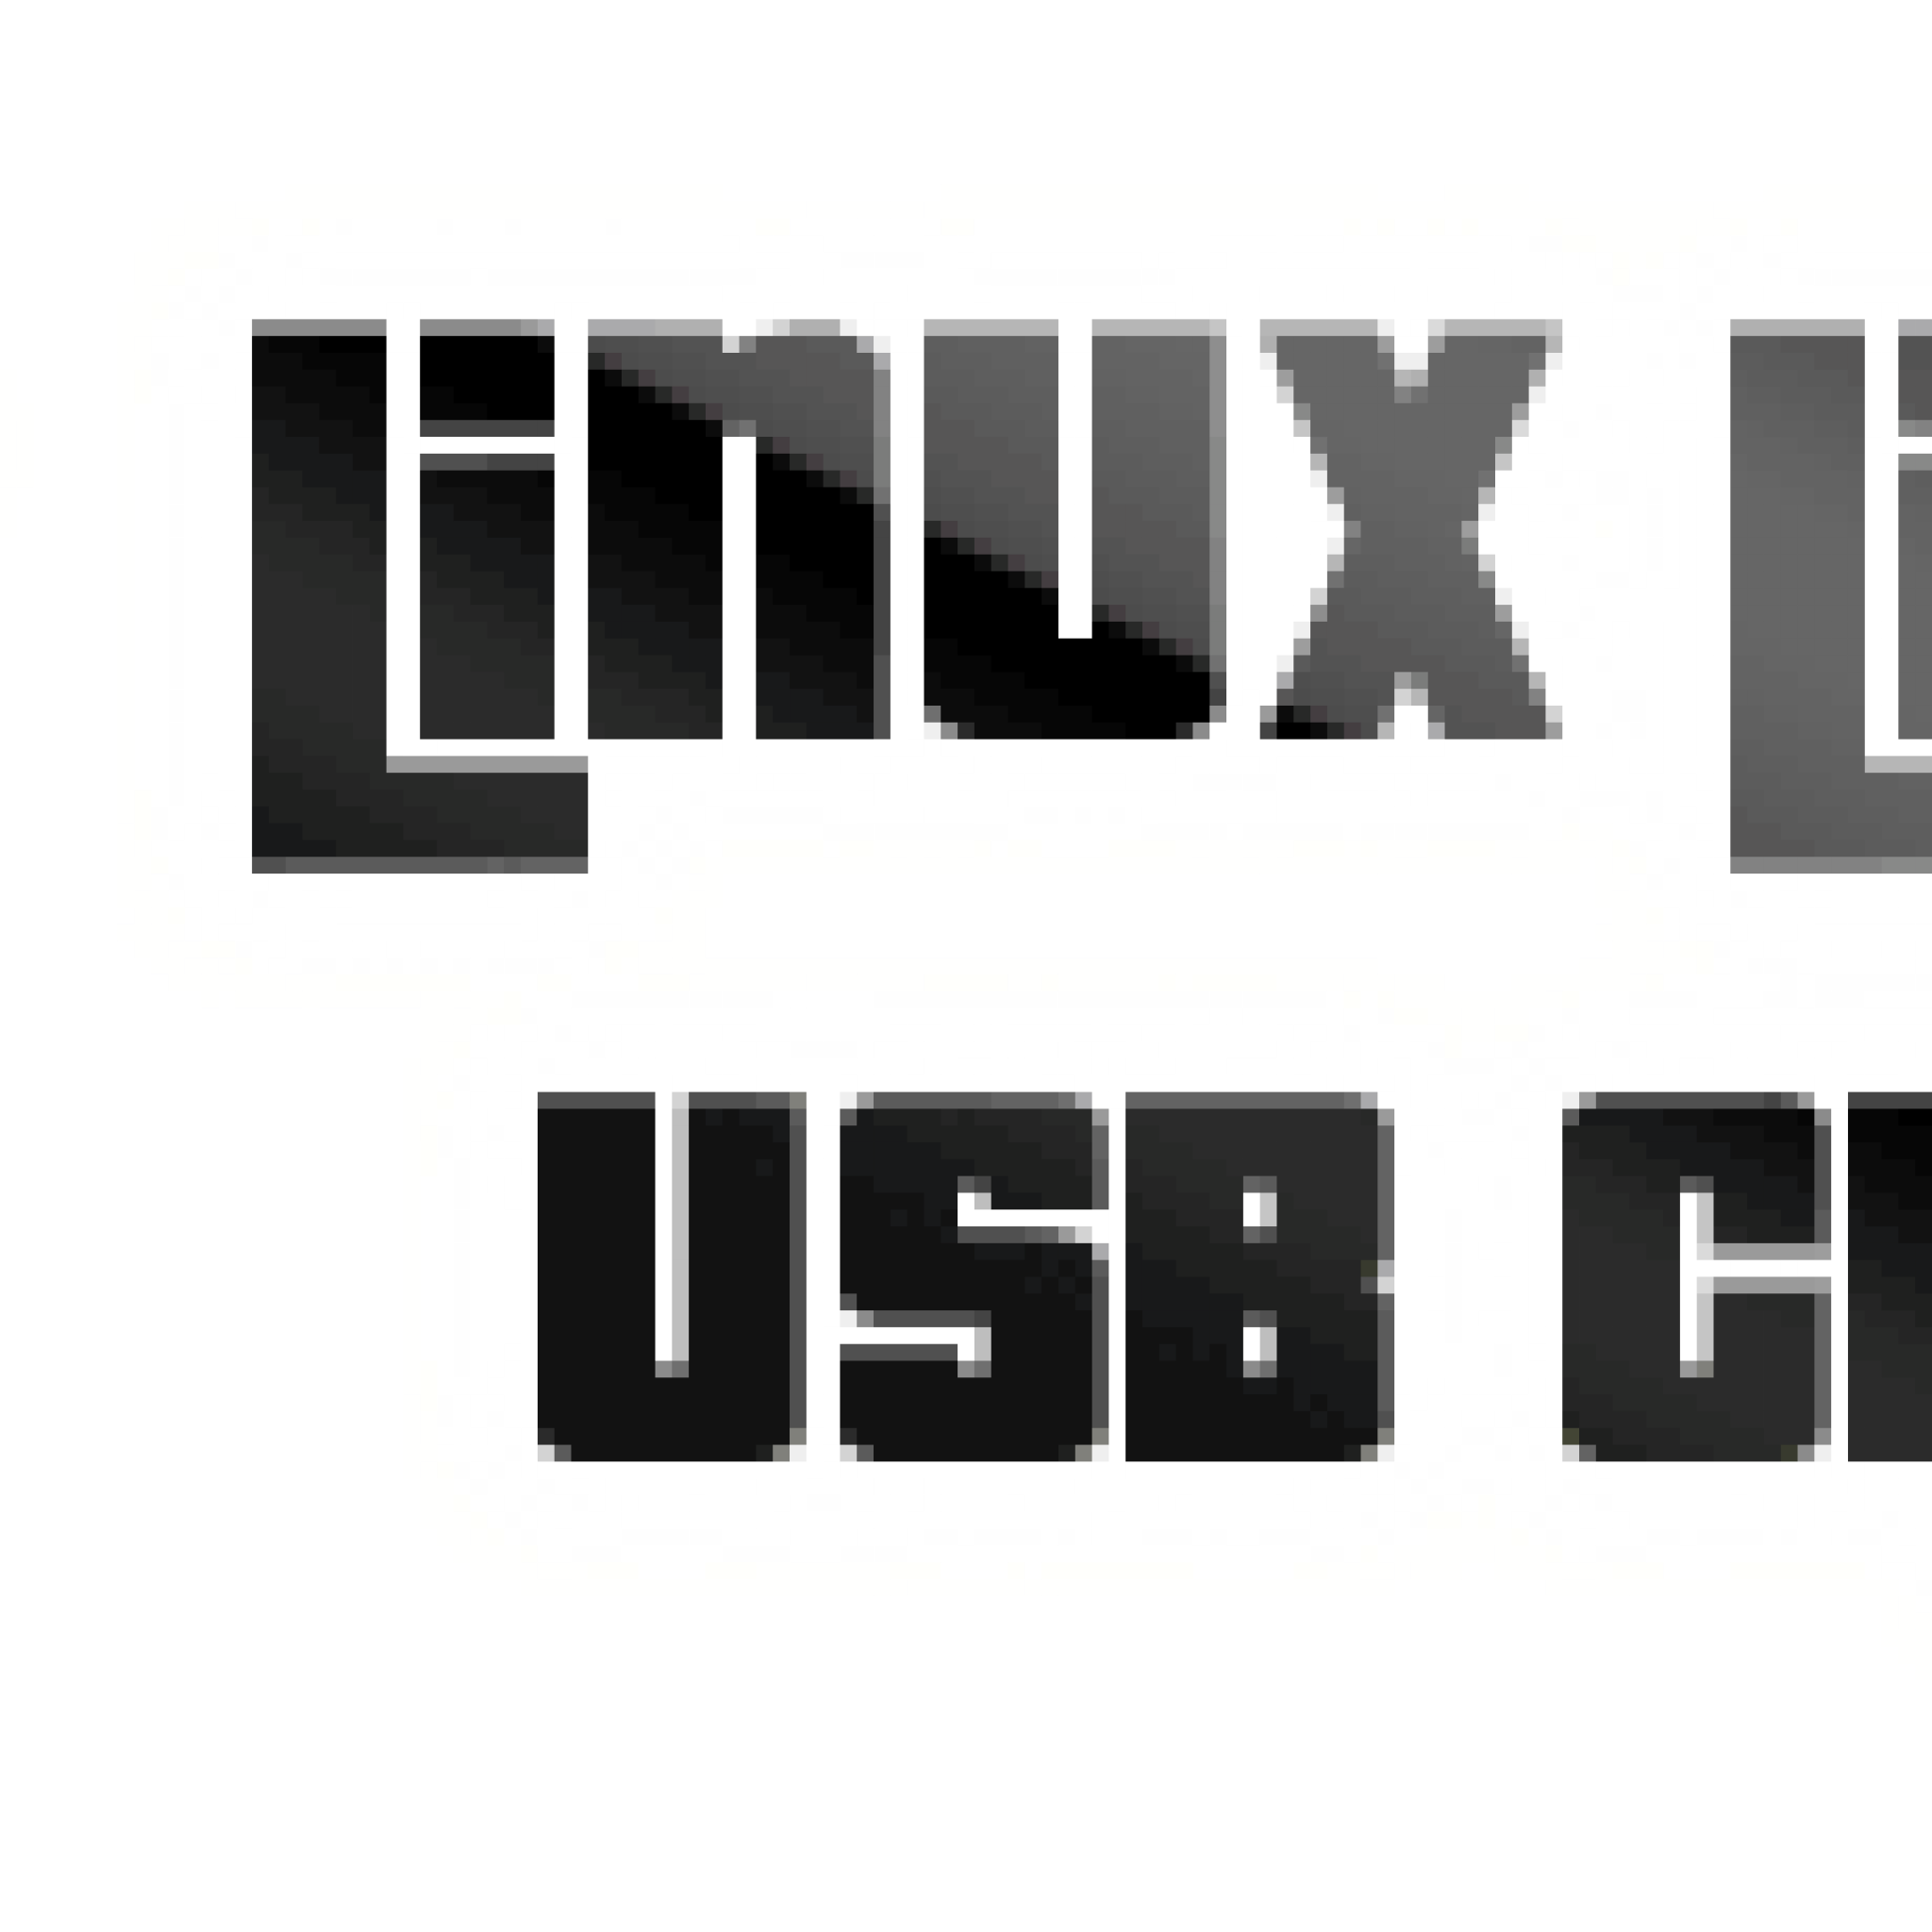 Linux Live Usb Creator: Y Crea Tu Propio Pendrive Con Linux Live